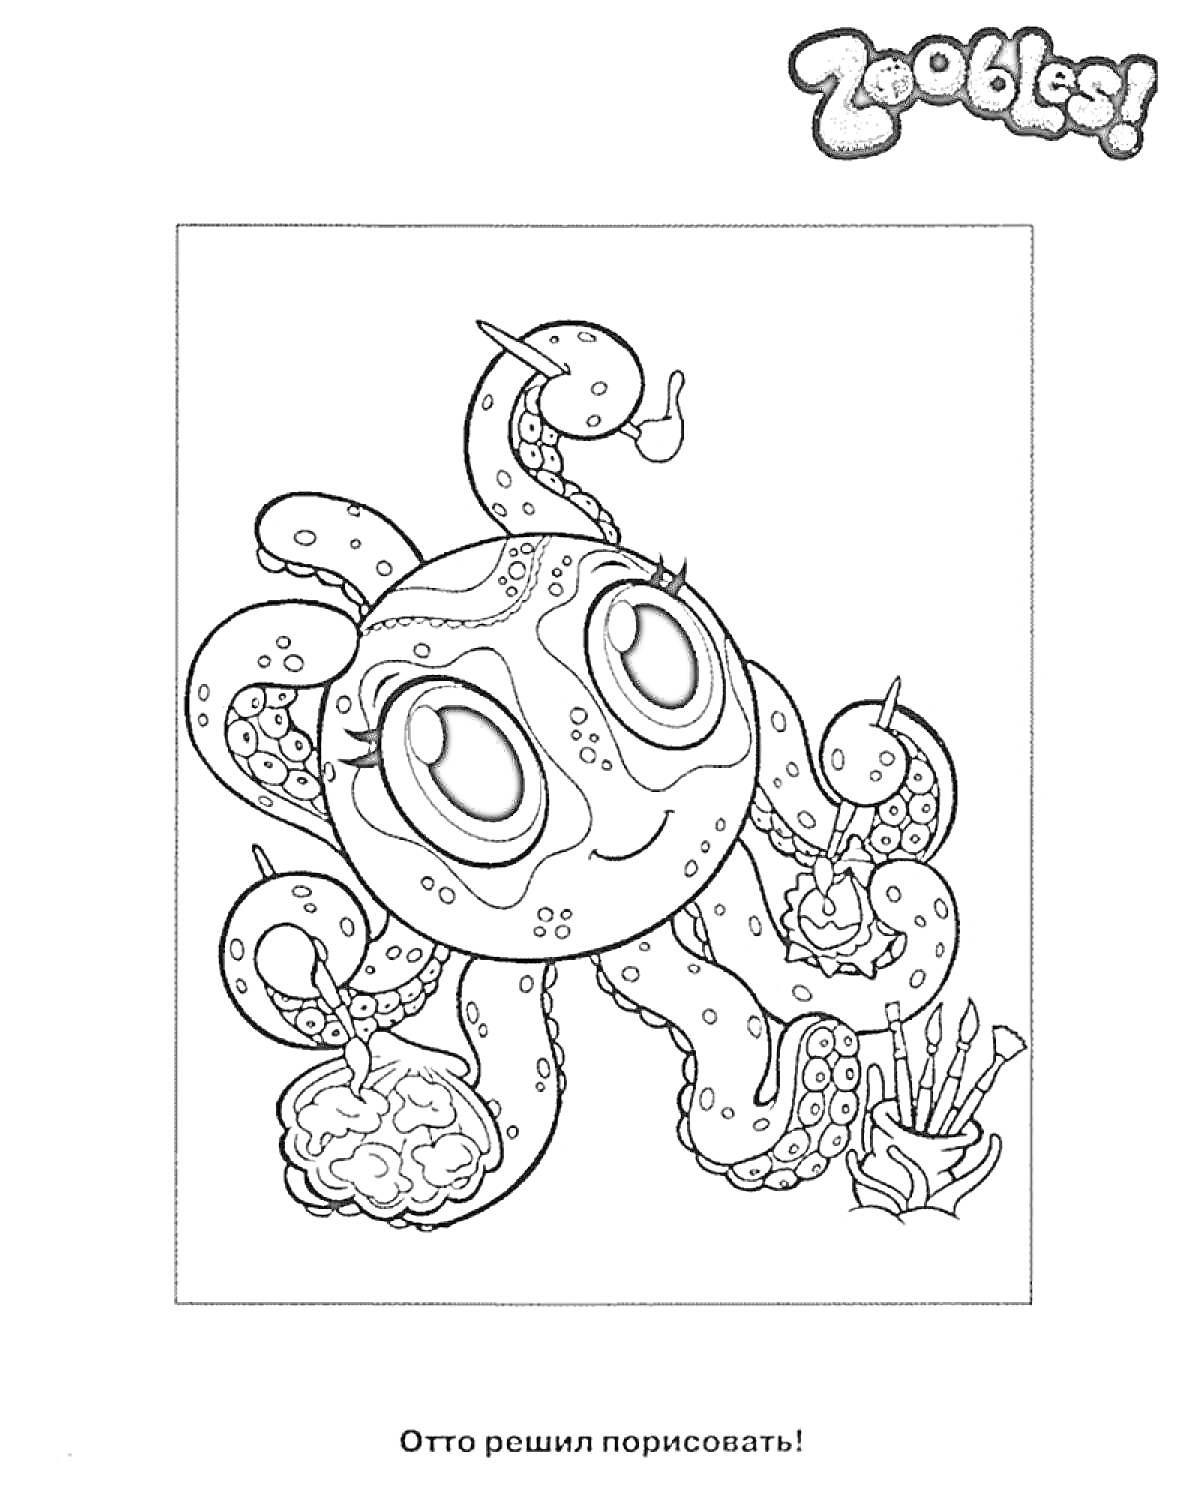 Зублс - осьминог с рисунками, кисточками и красками